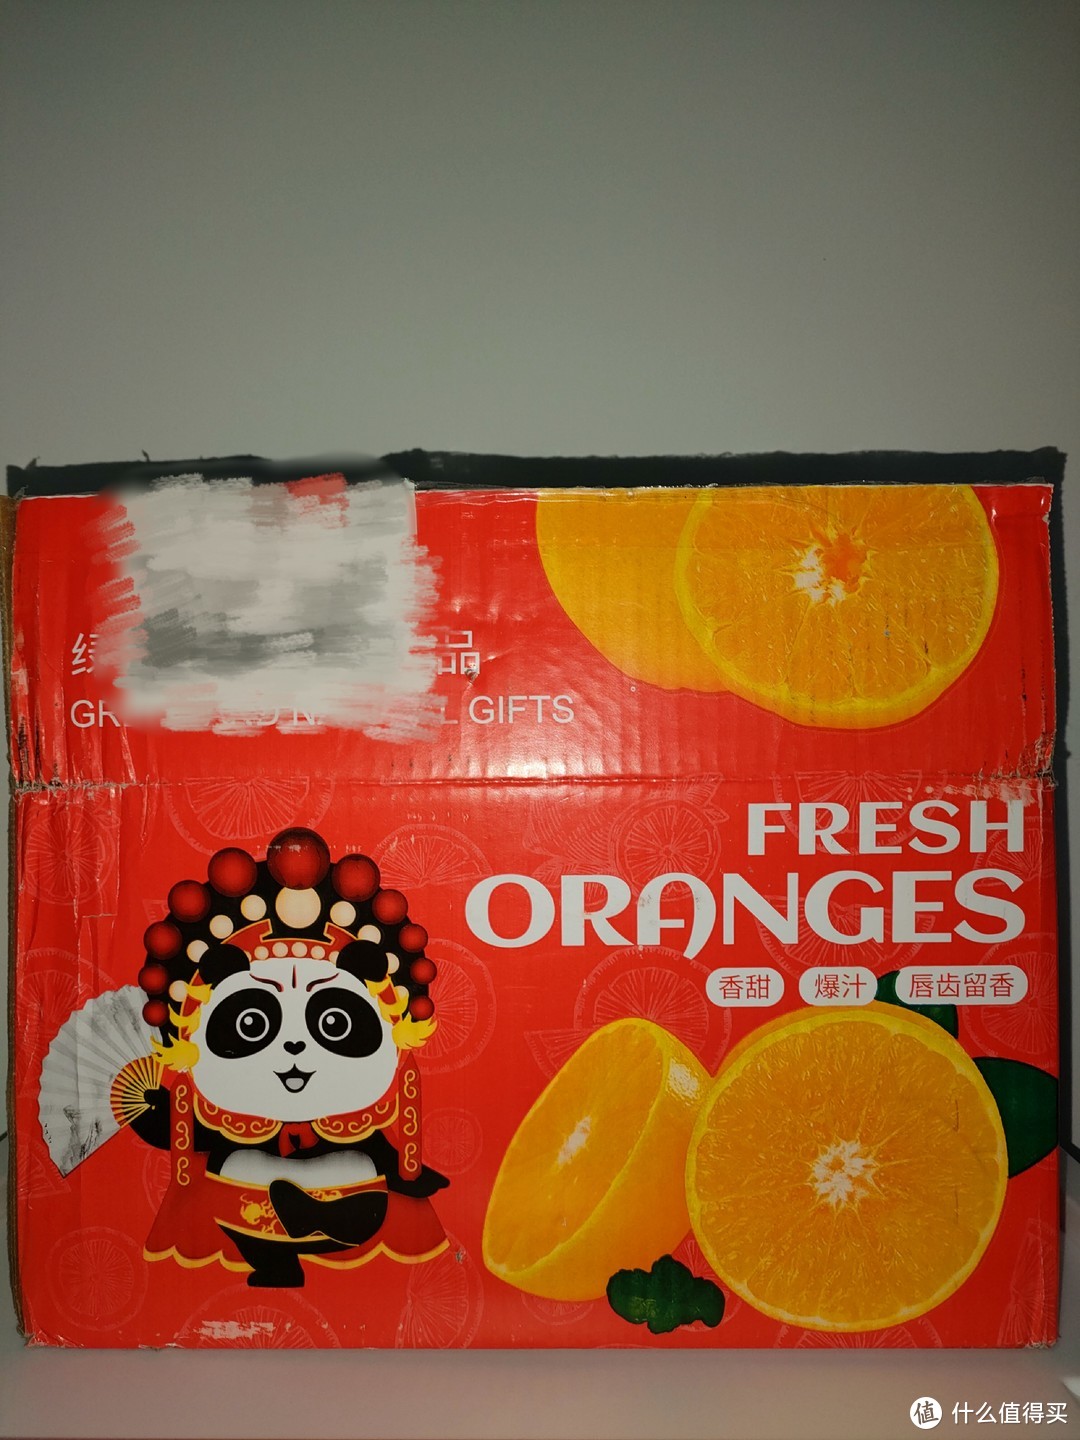 以为自己买的是耙耙柑，买回来才发现是丑橘